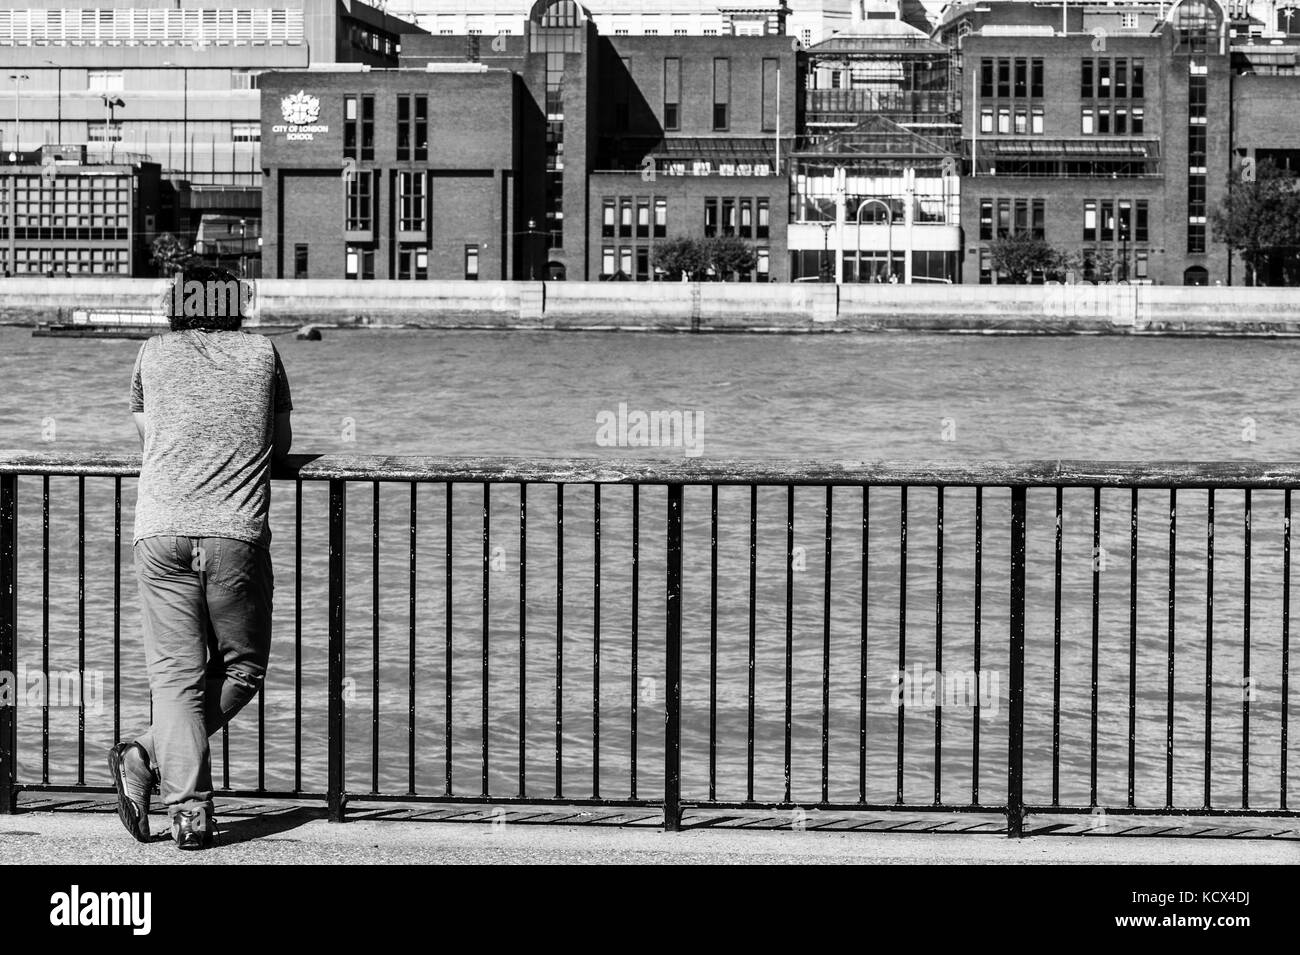 Portrait noir et blanc monochrome d'un homme avec son dos à l'appareil photo en regardant la Tamise à Londres, le gouvernement de Coronavirus a verrouillé Banque D'Images